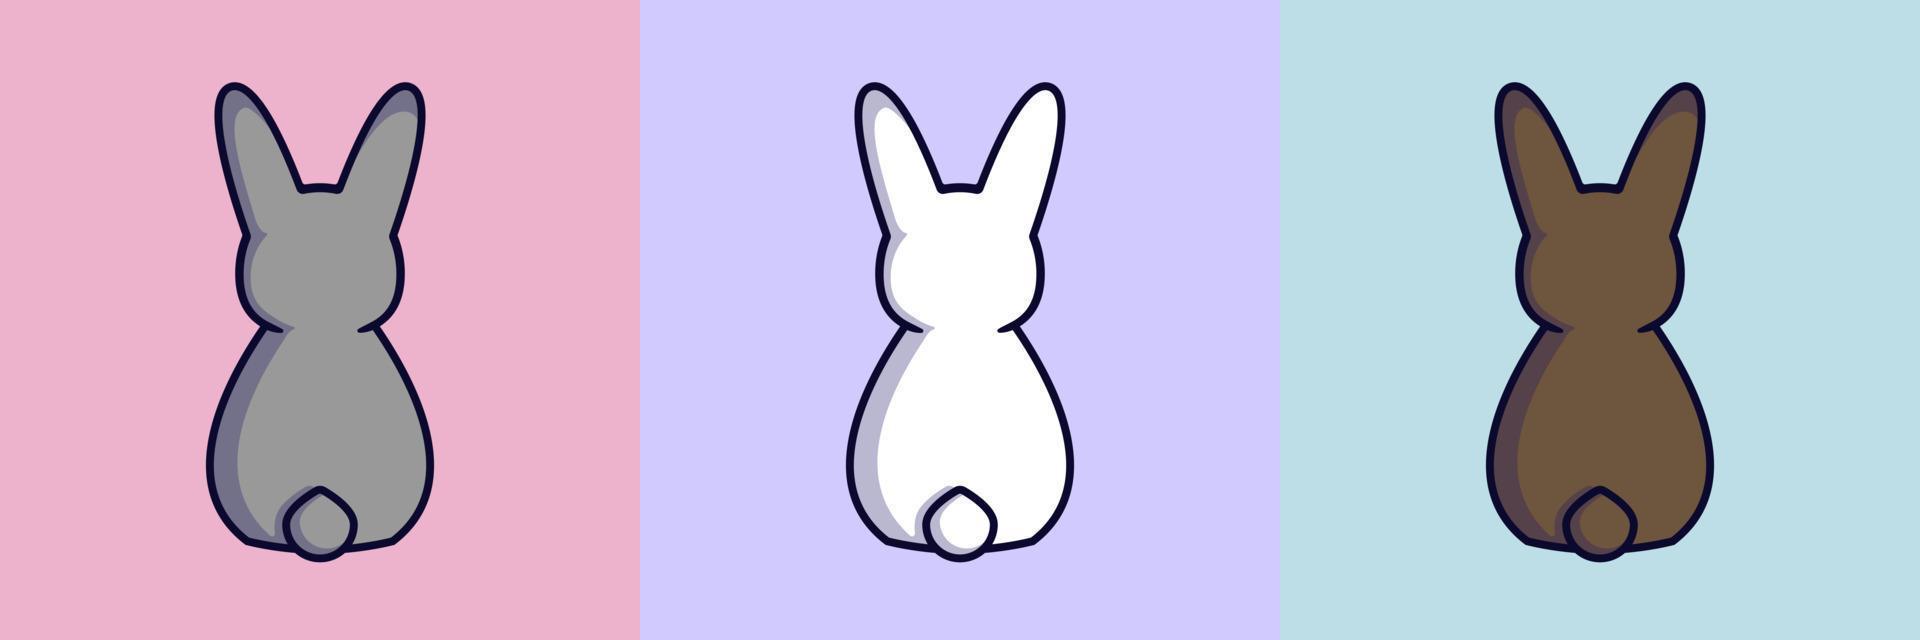 impostato di tre conigli. bianca coniglio. grigio coniglio. Marrone coniglio. Pasqua coniglietti vettore